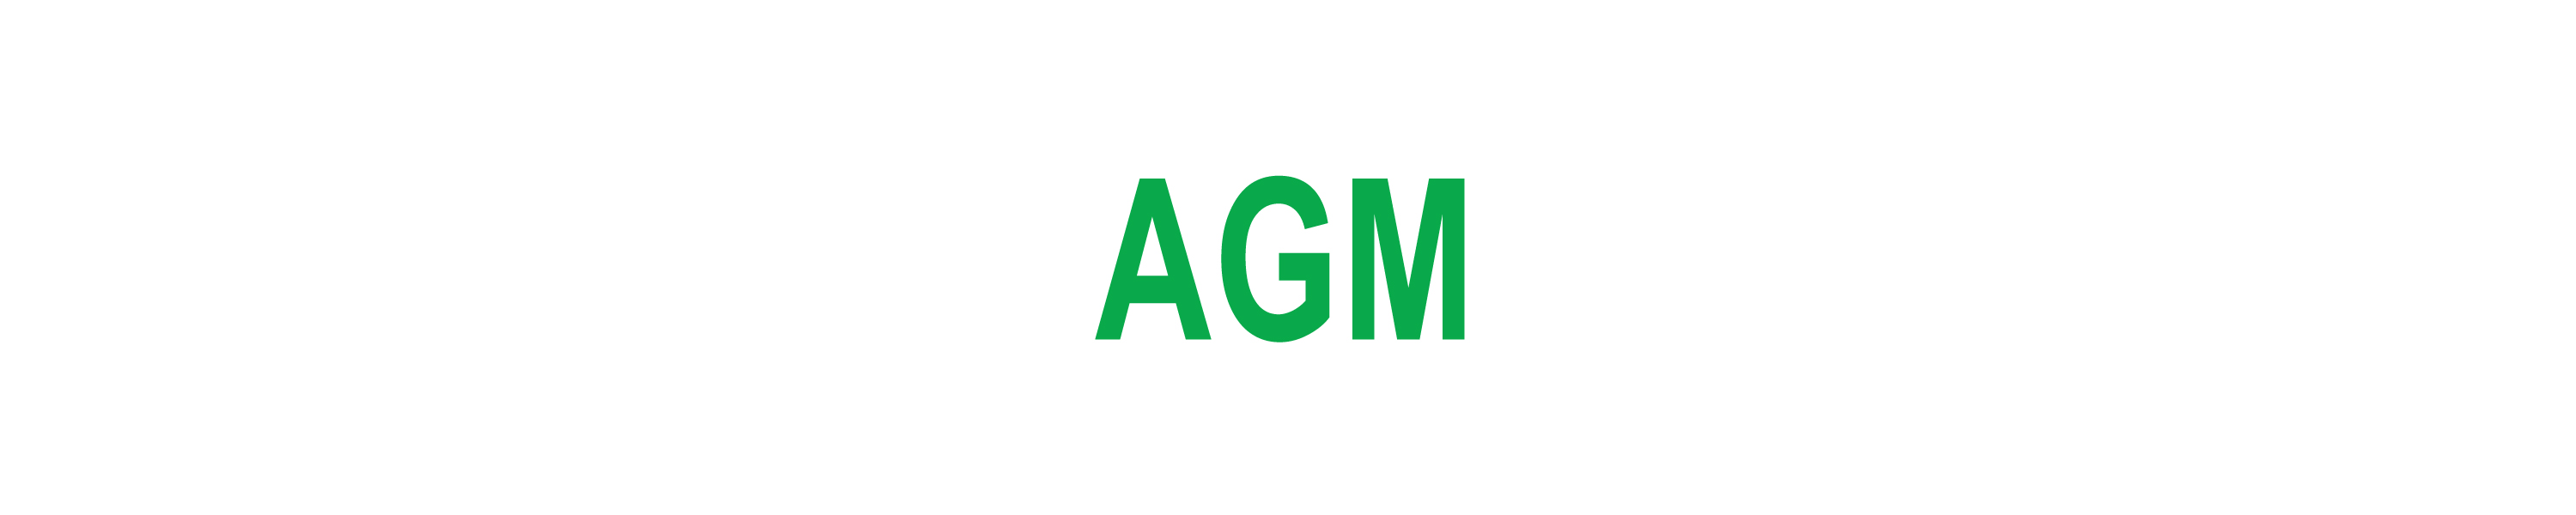 AGM Pre-registration now open!